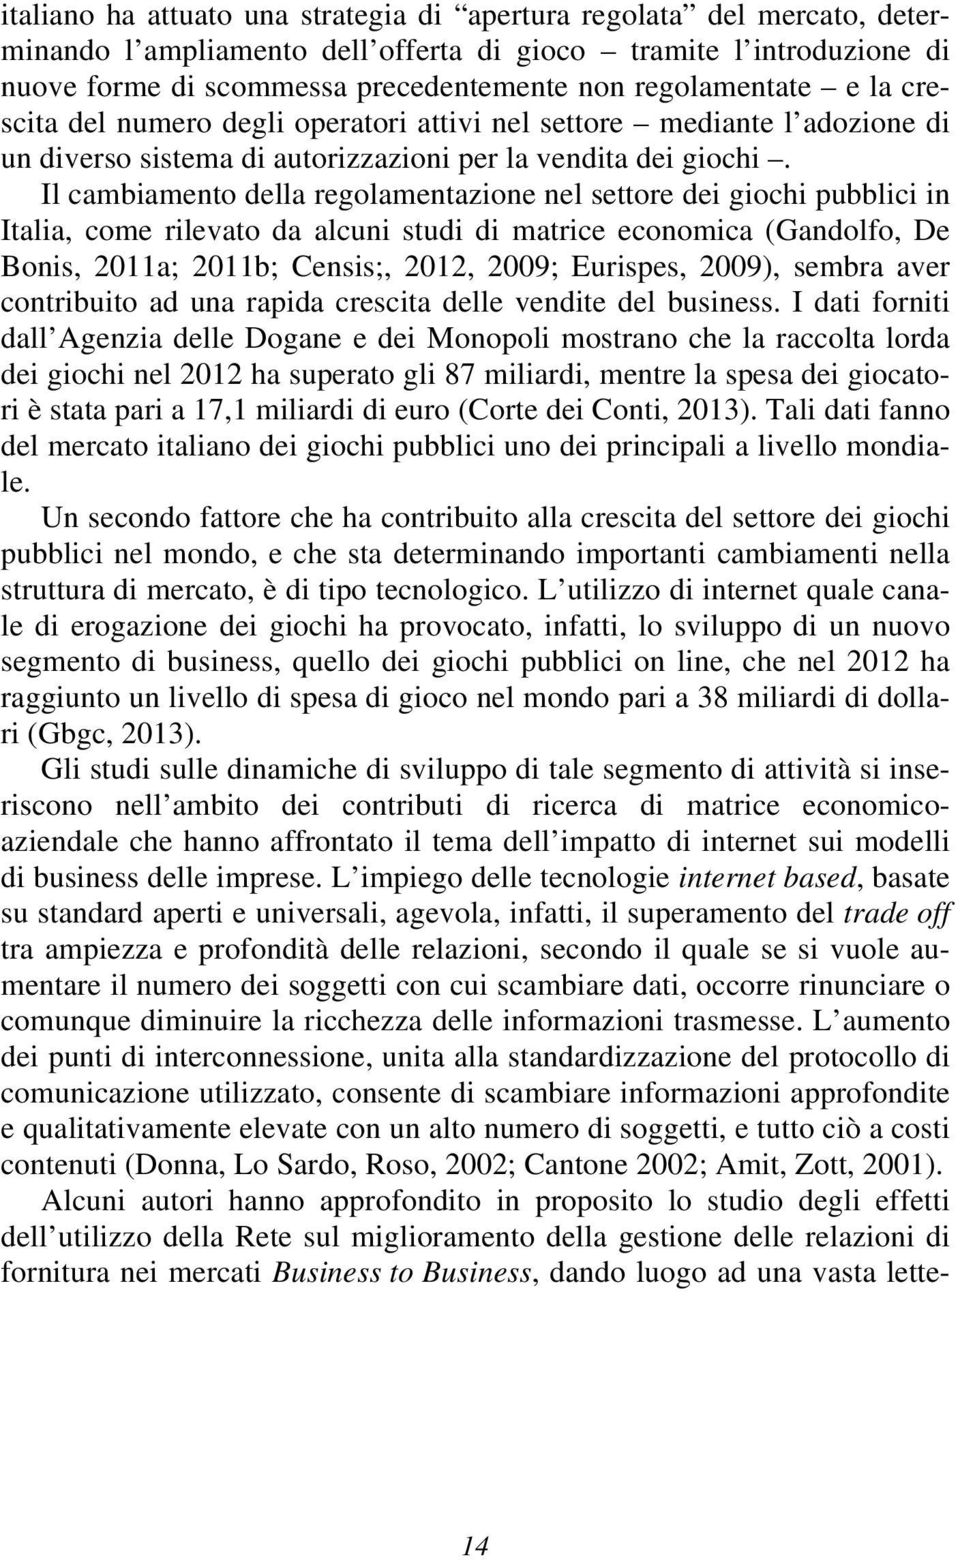 Il cambiamento della regolamentazione nel settore dei giochi pubblici in Italia, come rilevato da alcuni studi di matrice economica (Gandolfo, De Bonis, 2011a; 2011b; Censis;, 2012, 2009; Eurispes,